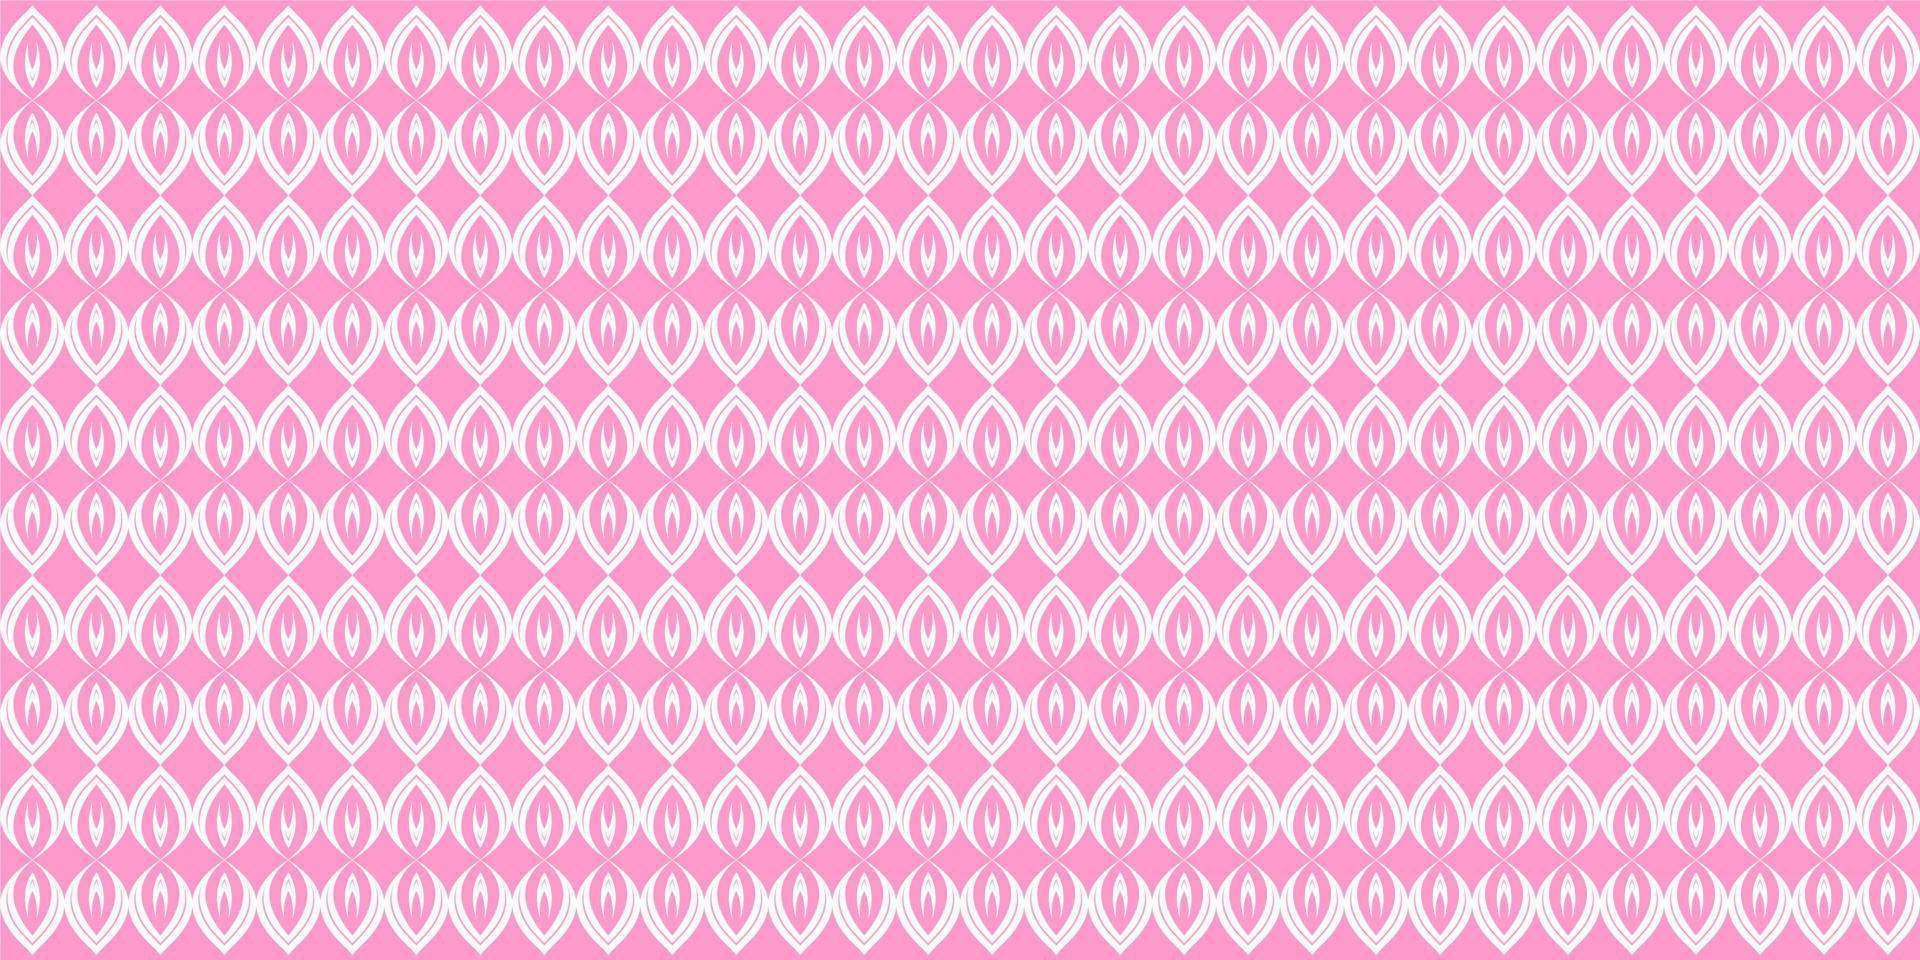 hojas patrón vector fondo rosa. vector libre